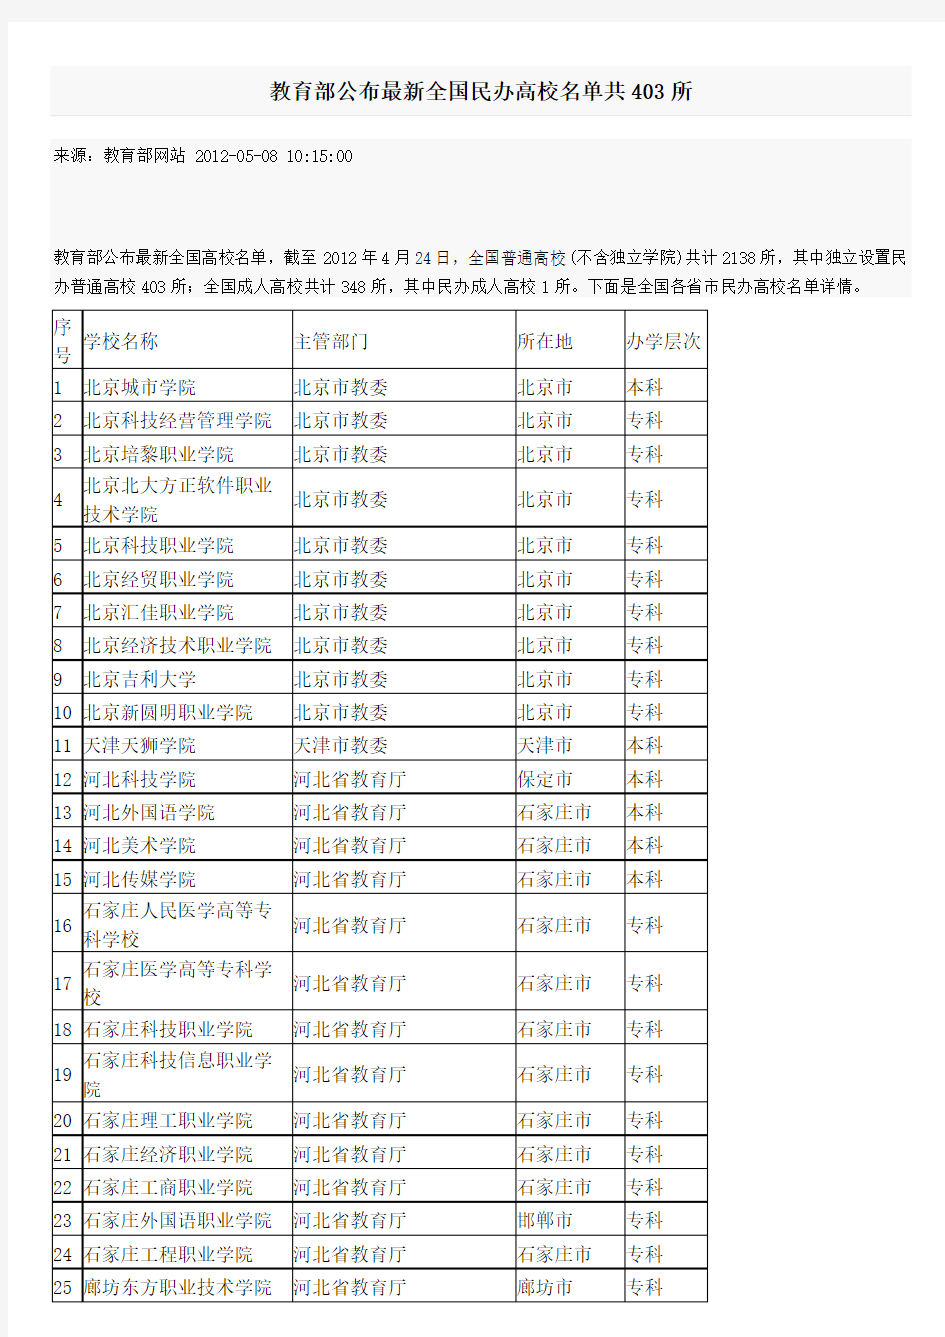 教育部公布最新全国民办高校名单共403所(2012-5-8)